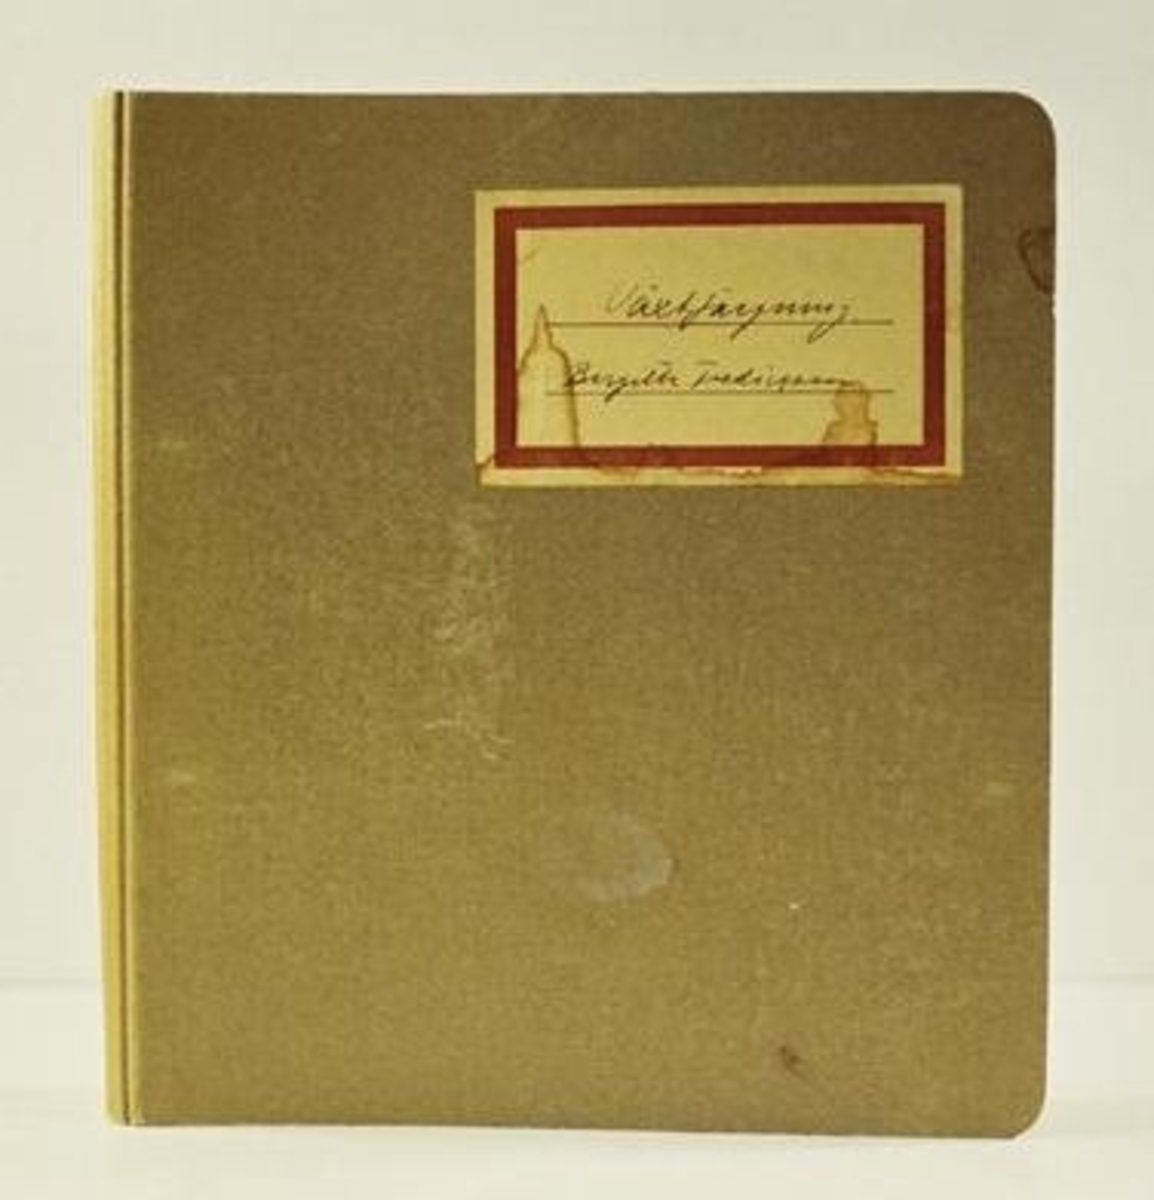 Pärm, så kallad ringpärm, om växtfärgning skrivet i dagboksform. Användes och skrevs av givaren inom undervisningen vid Johanna Brunssons vävskola i Stockholm 15/8 - 28/8 1945.